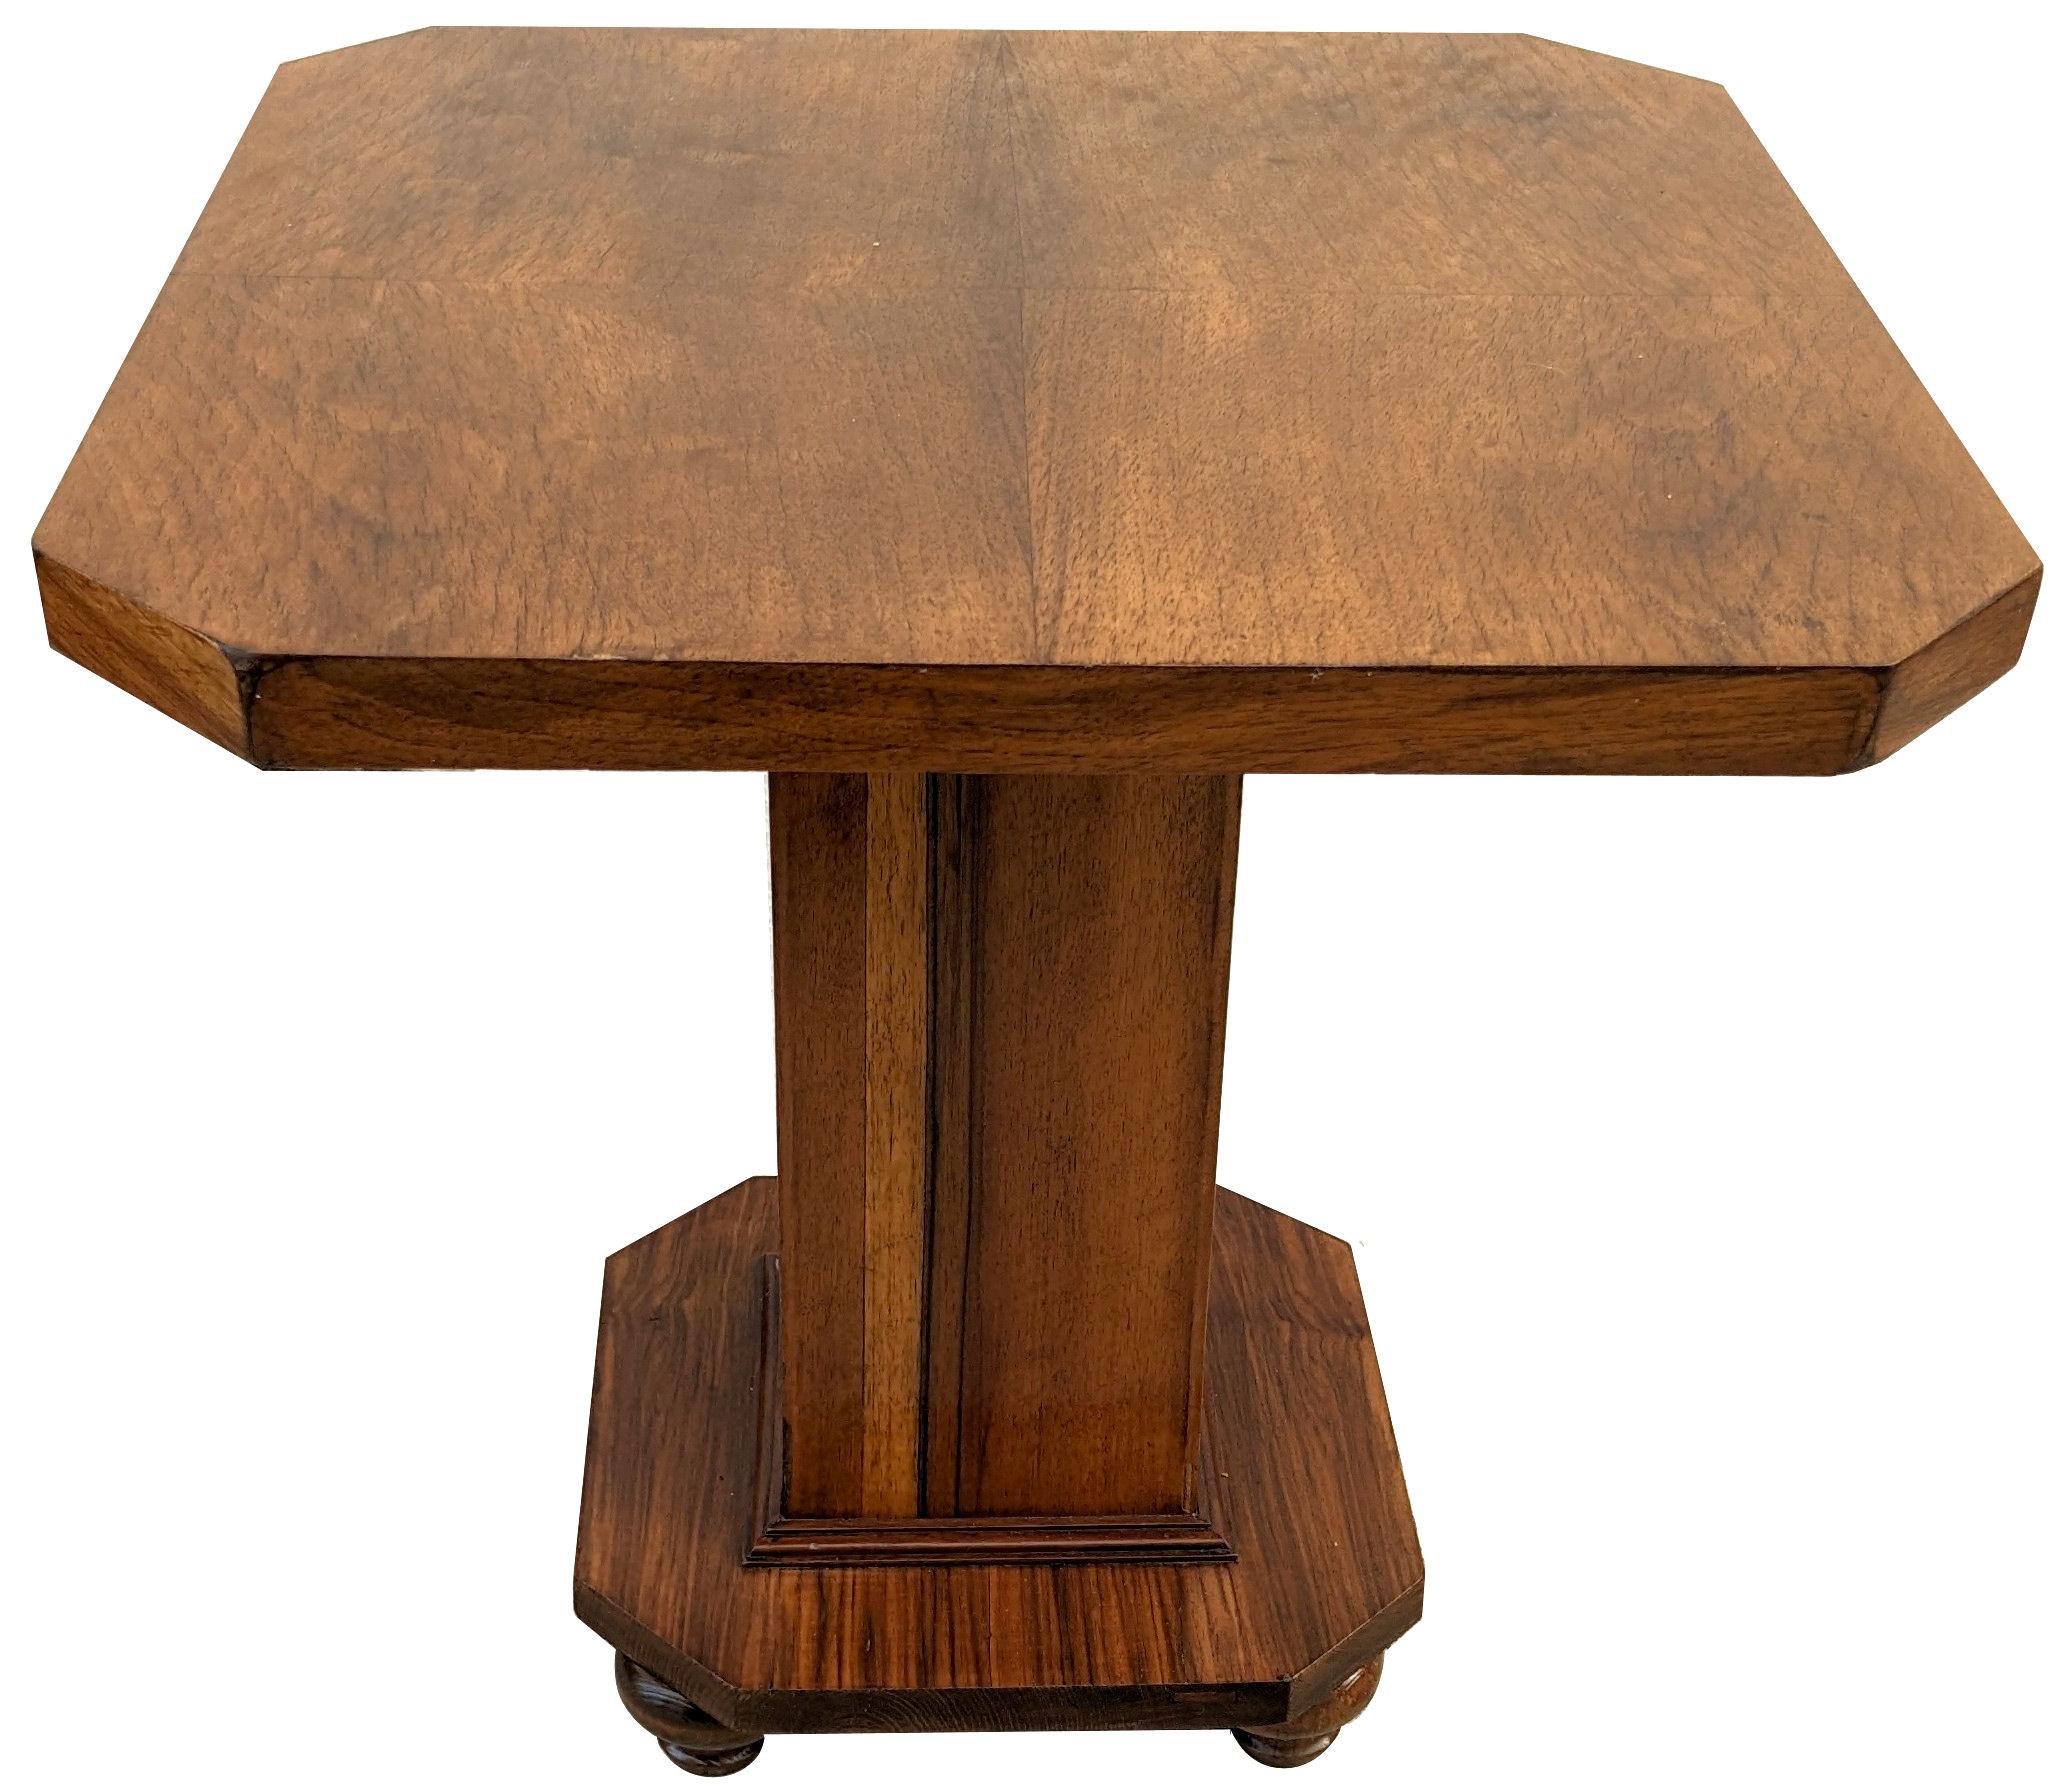 Fabuleuse et originale table d'appoint en noyer Art Déco des années 1930. Cette table est idéale pour une utilisation moderne, que ce soit comme table basse ou comme table centrale. Le véhicule est en très bon état. Il est passé par nos ateliers et